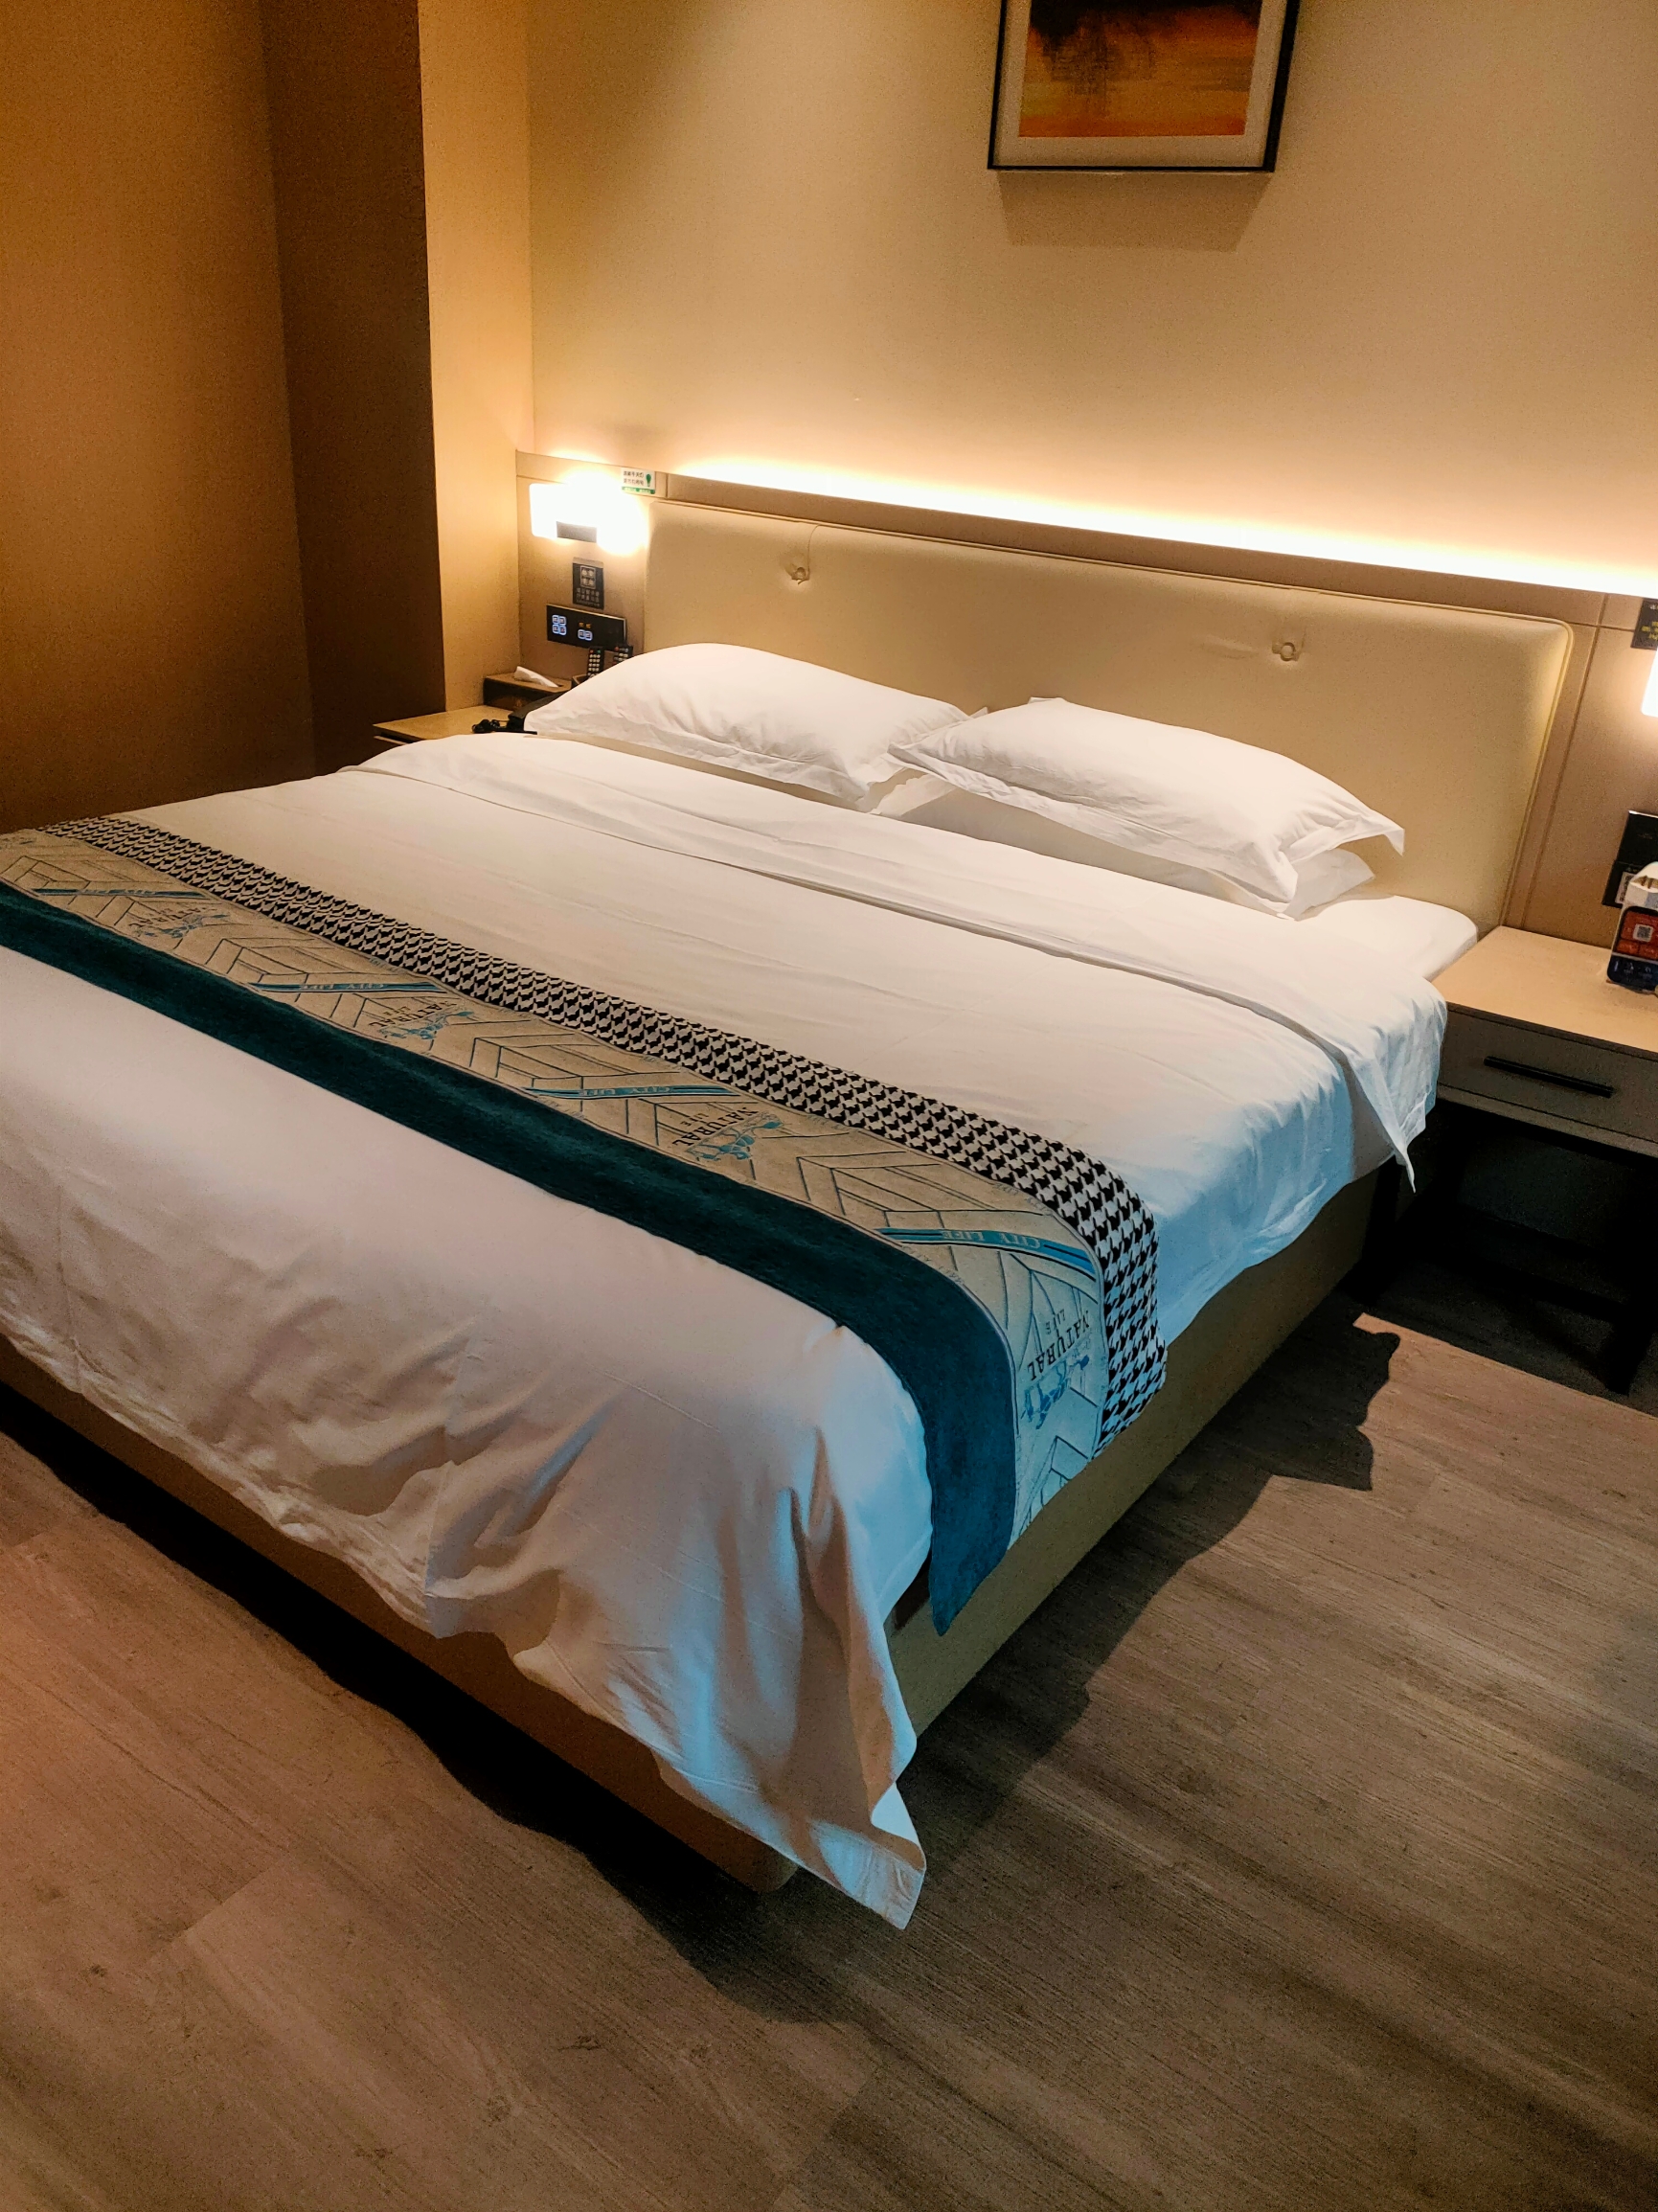 分享一个和朋友在谷城住的宝藏酒店✔高级床垫✔办公需求✔假期要